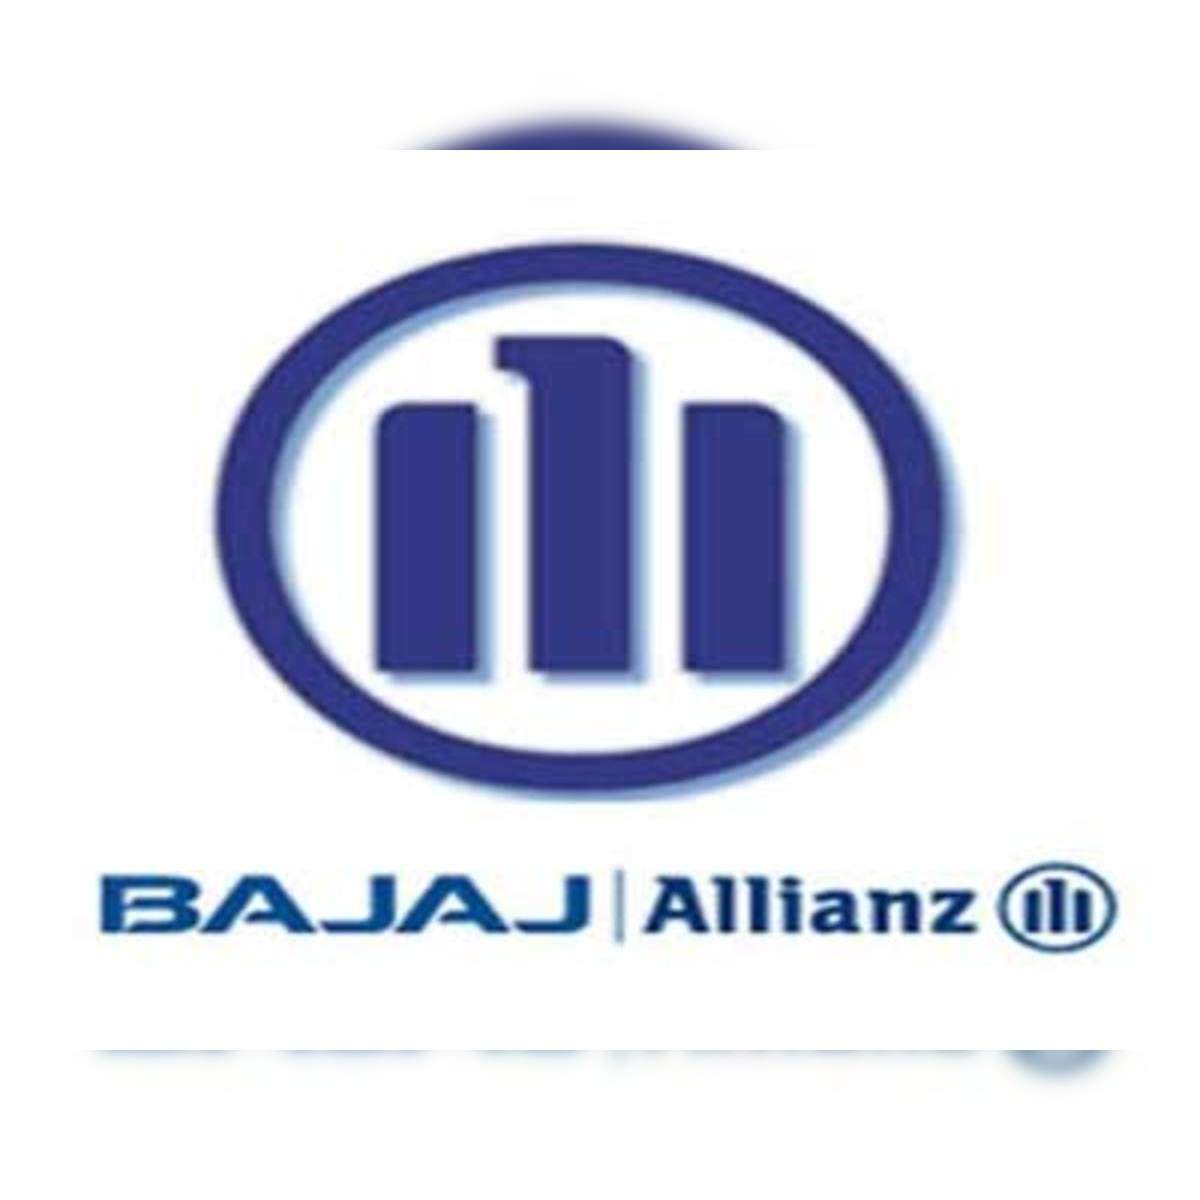 Mr. Tarun Chugh, MD & CEO, Bajaj... - Bajaj Allianz Life | Facebook